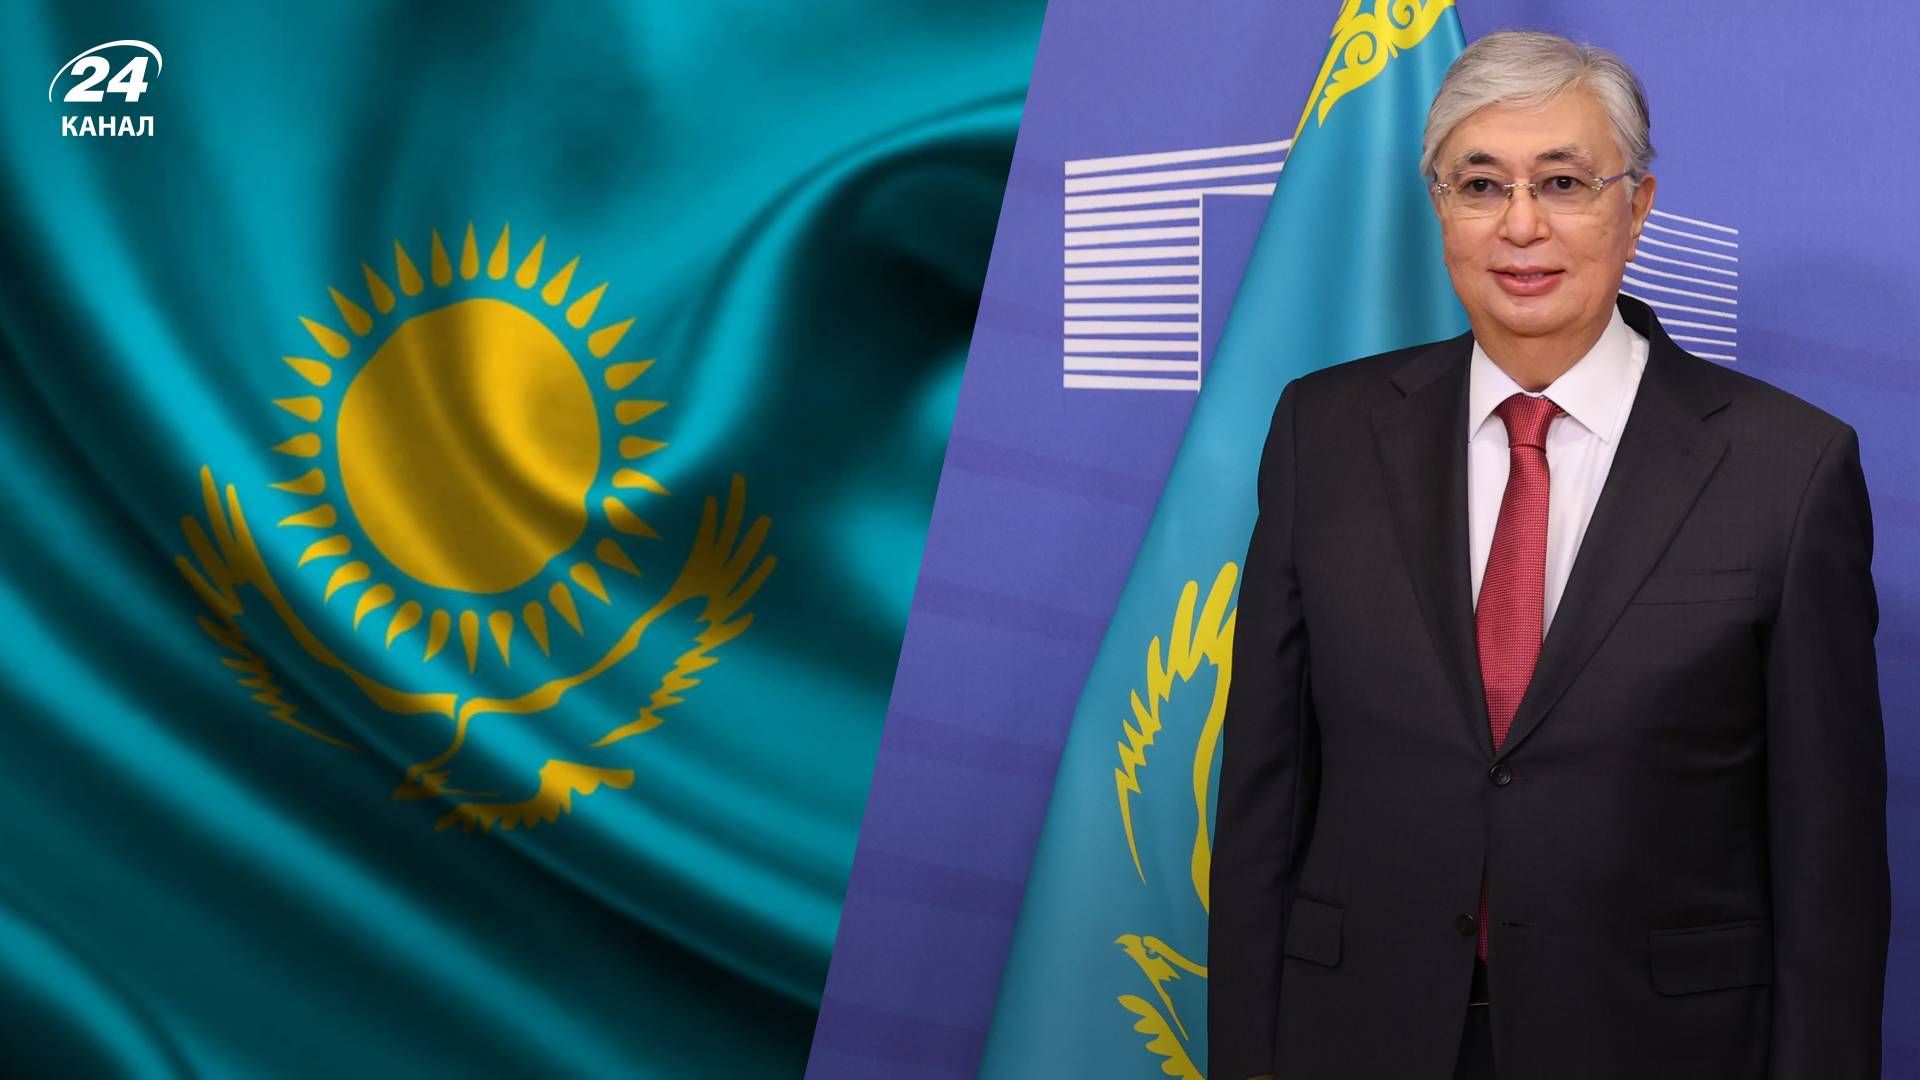 Токаев не будет противником России - Какой политики будет придерживаться глава Казахстана